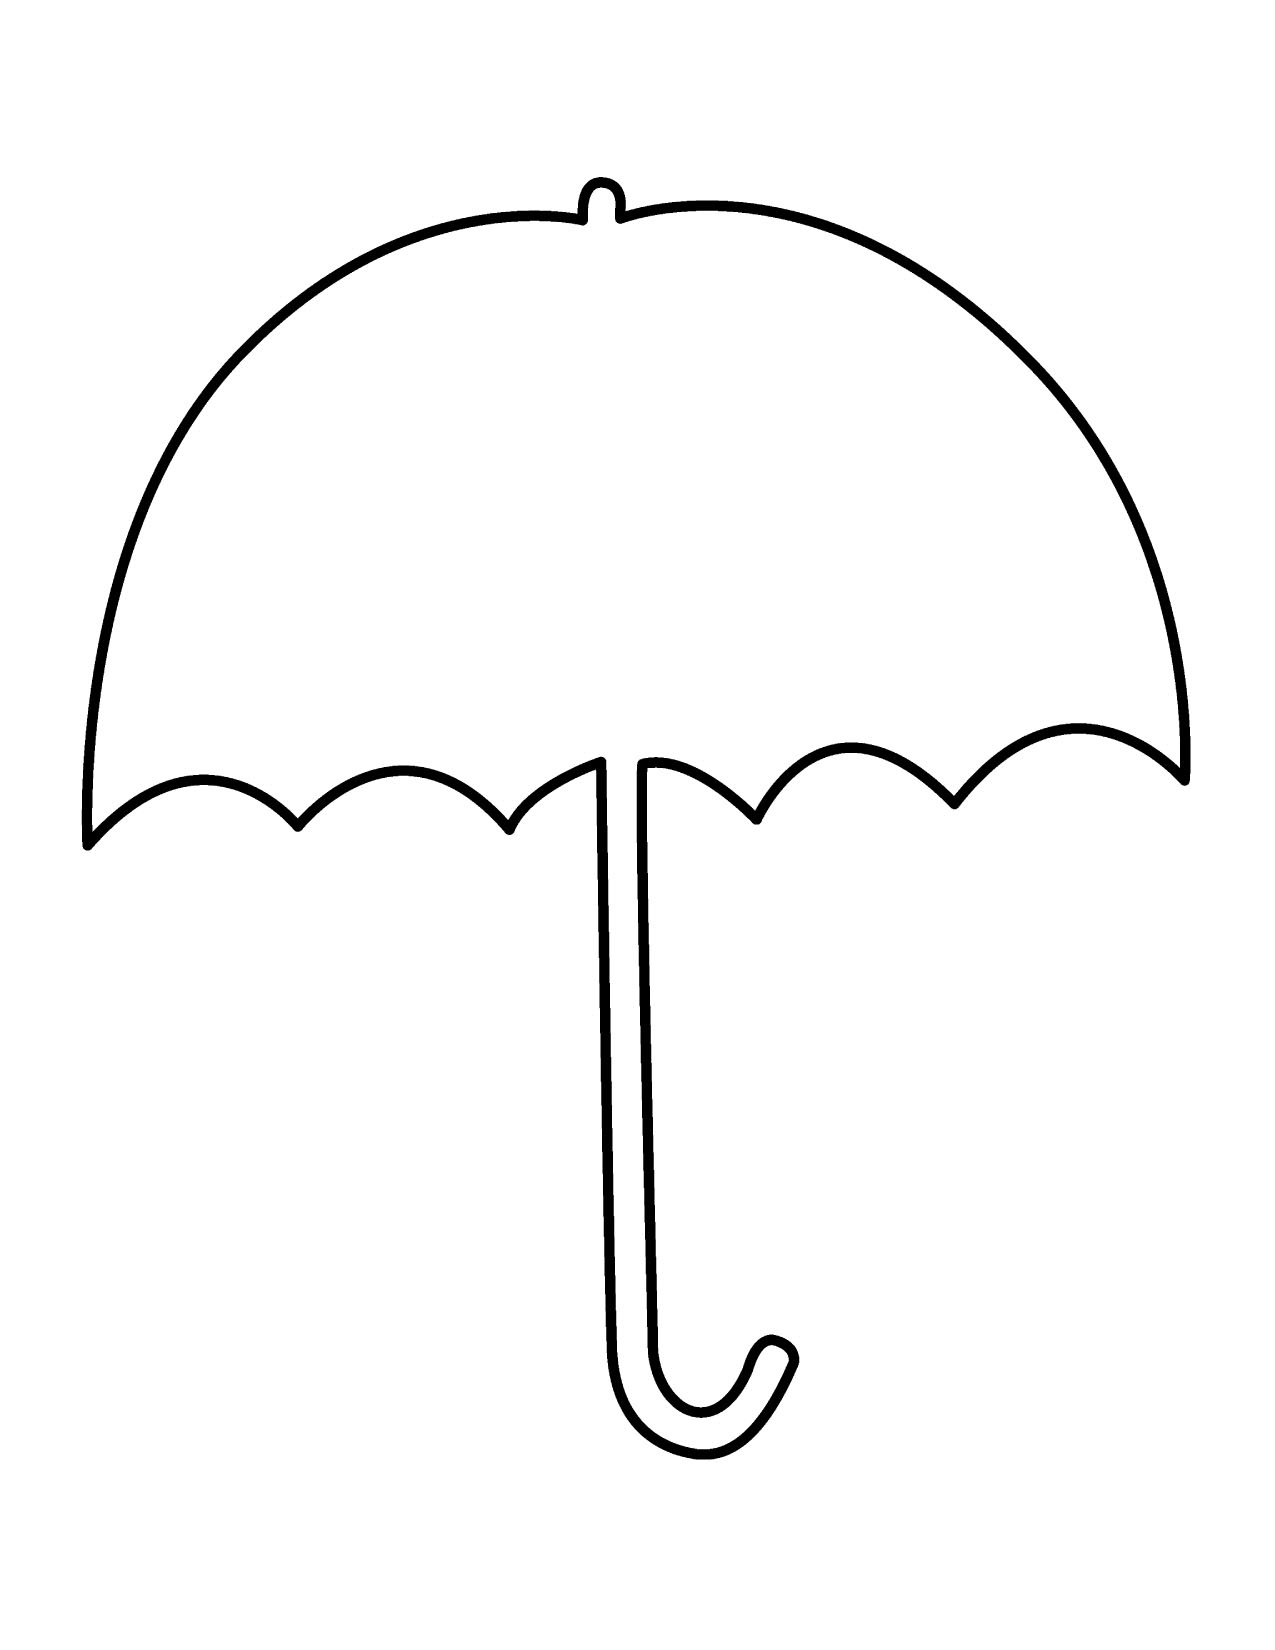 Umbrella black and white black and white umbrella clipart 2 ...